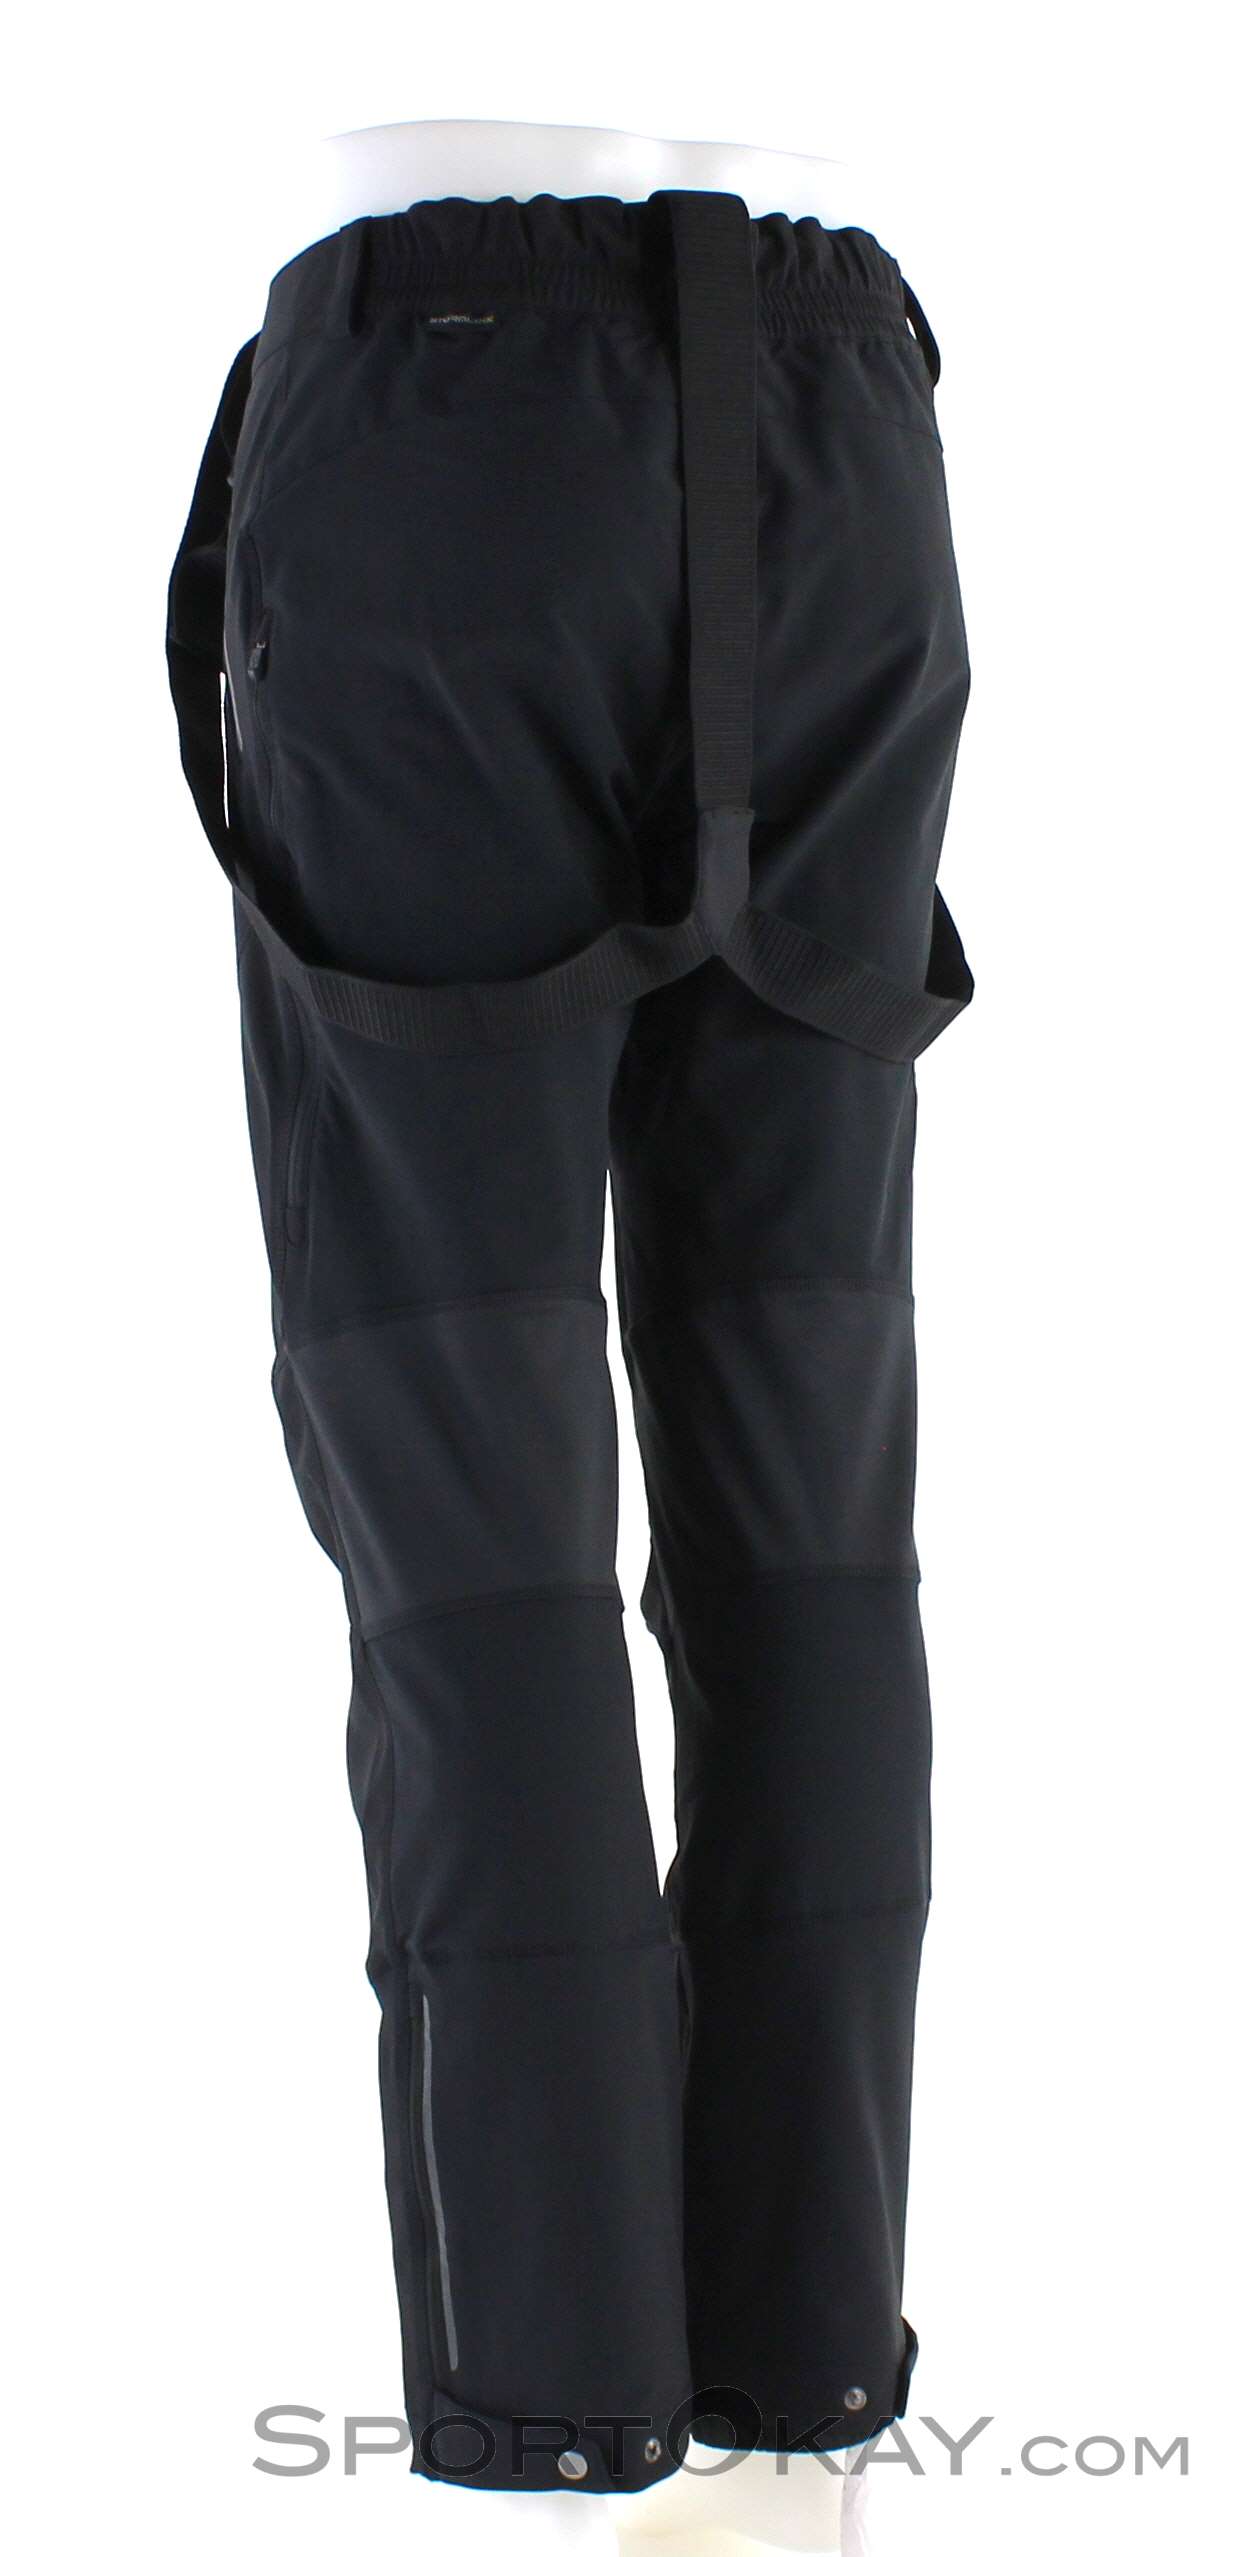 Sorgenfreiheitsgarantie Jack Wolfskin Gravity - Clothing - Tour All Ski & - Freeride Mens Pants Pants Pants Ski Ski Ski - Touring